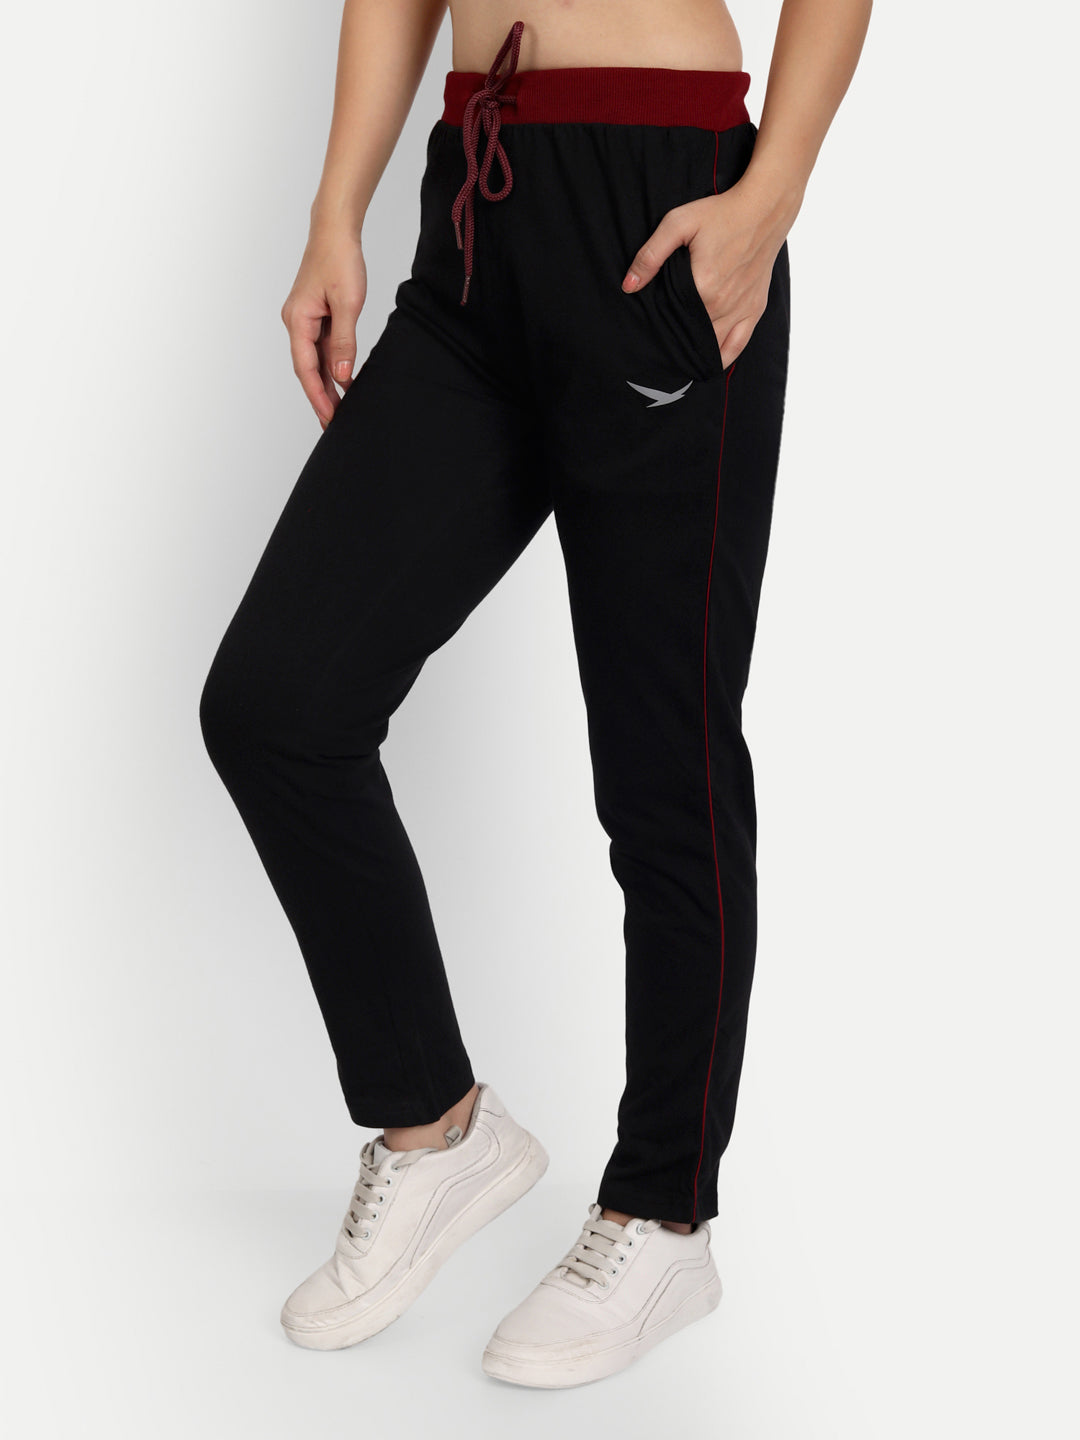 Dyln Hudson Women's Sky Tie Dye Track Pants Sweatpants Womens in Multi Sz  XS | eBay